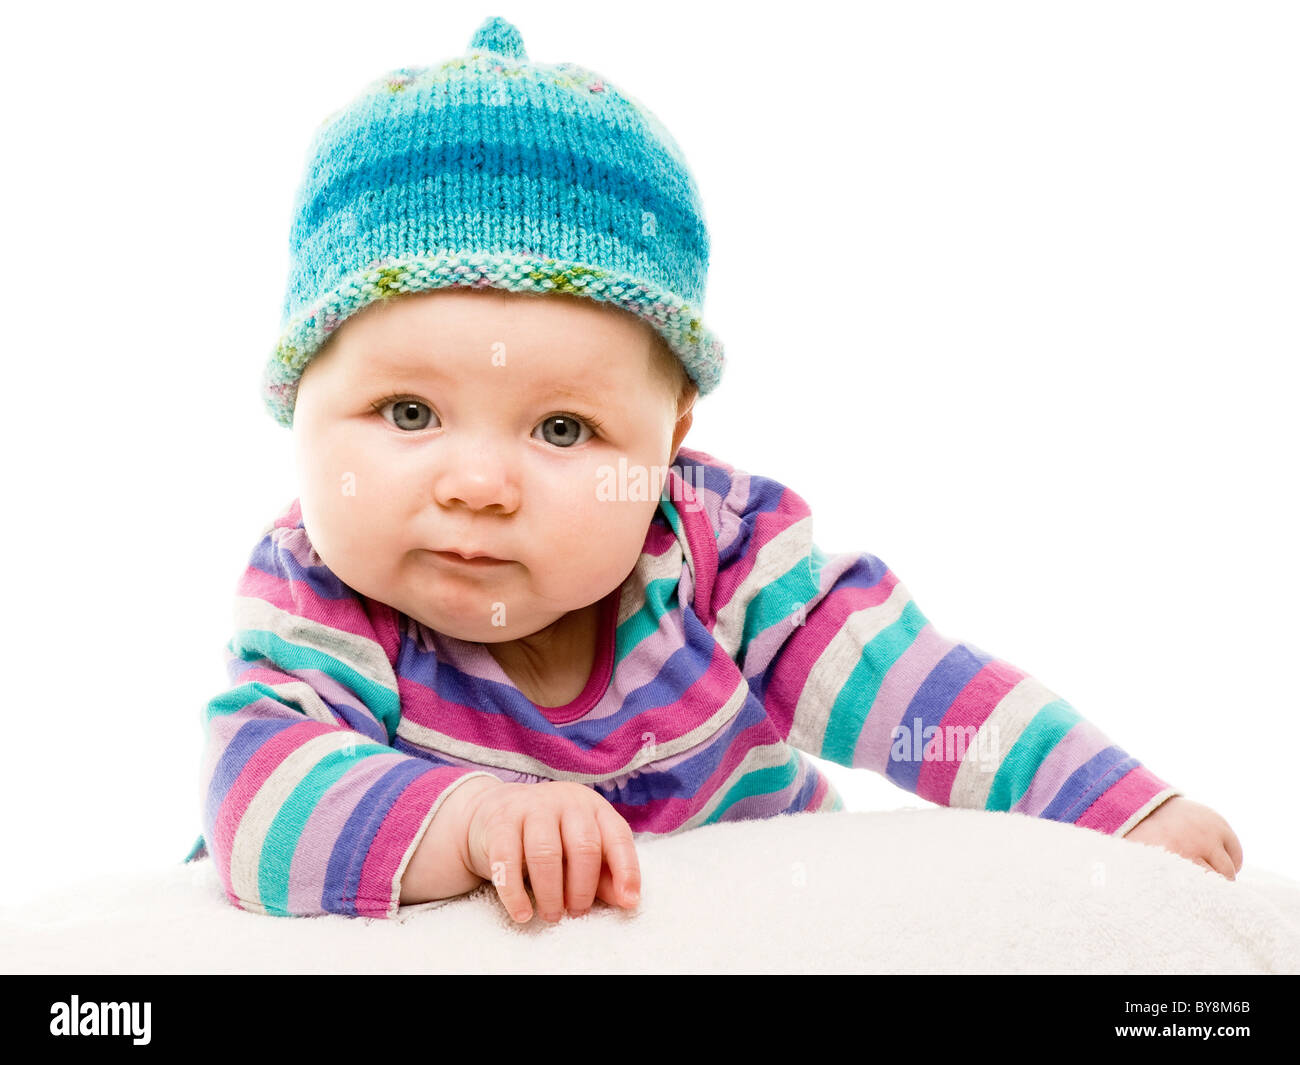 Tiro de cabeza y hombros de un bebé caucásico con ojos verdes, vestido con un traje de rayas de colores brillantes y sombrero de punto de mano turquesa, Foto de stock